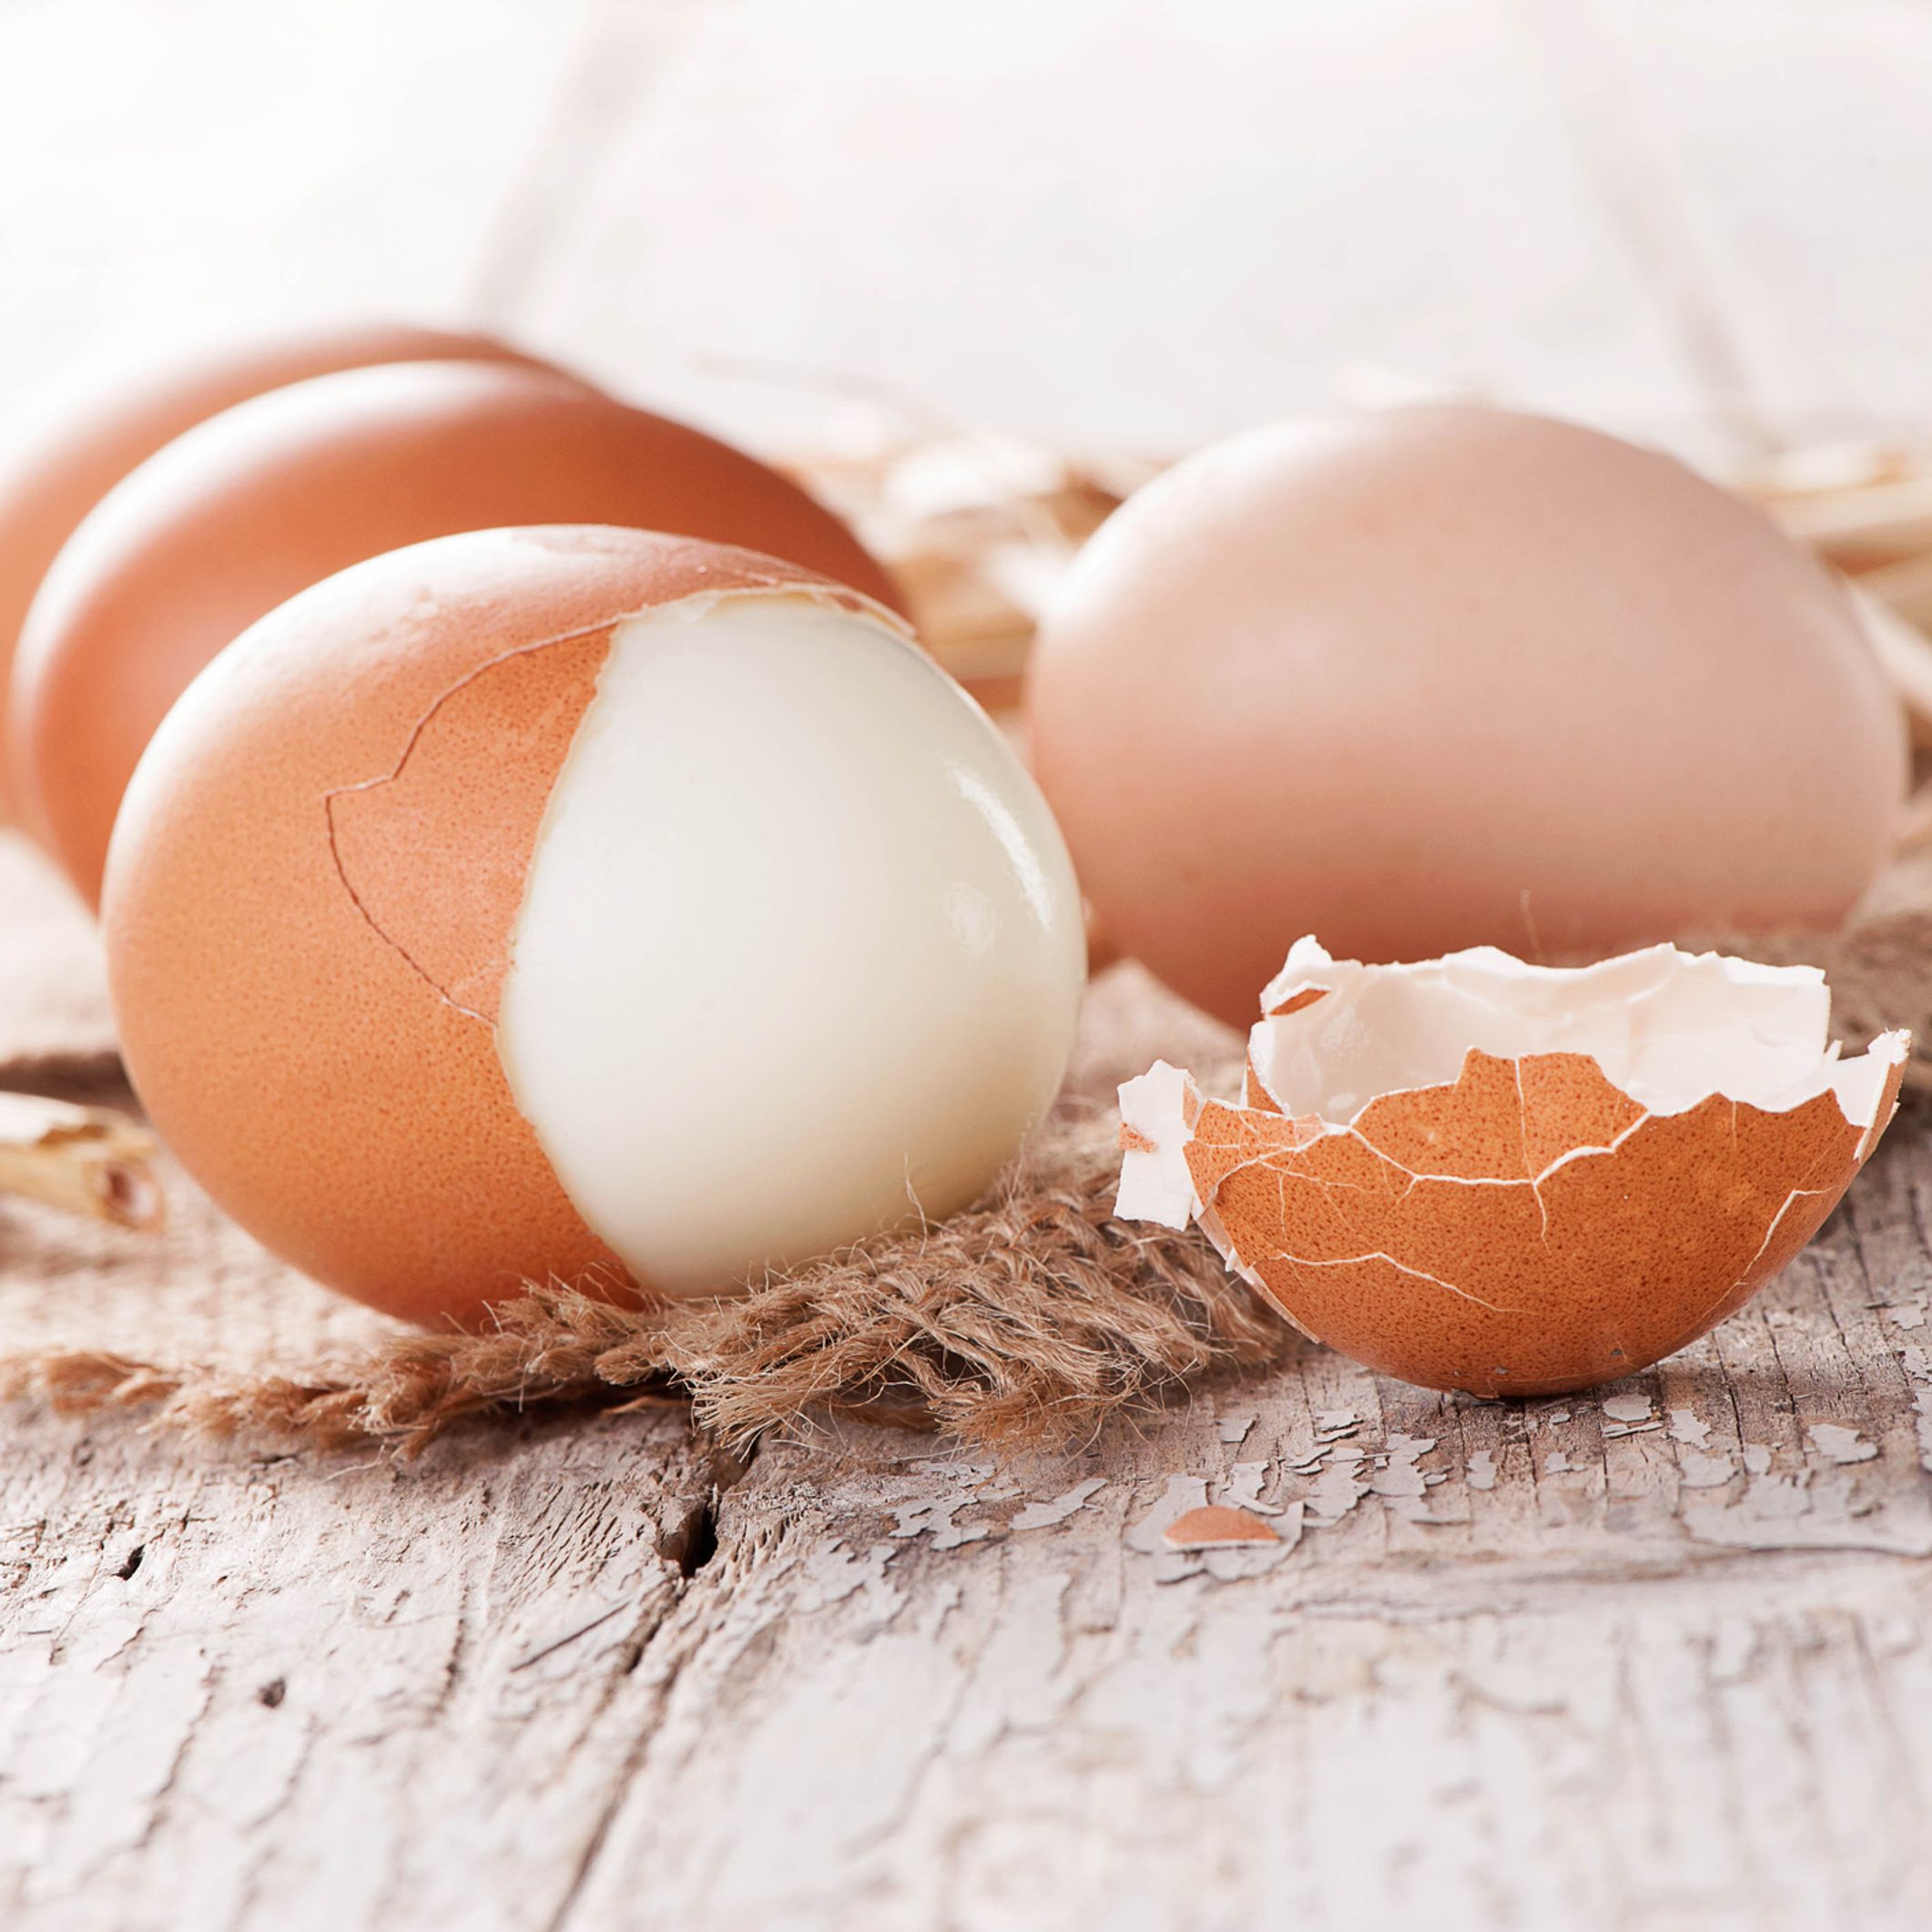 Comment écaler où éplucher un œuf dur facilement en un clin d'œil ?